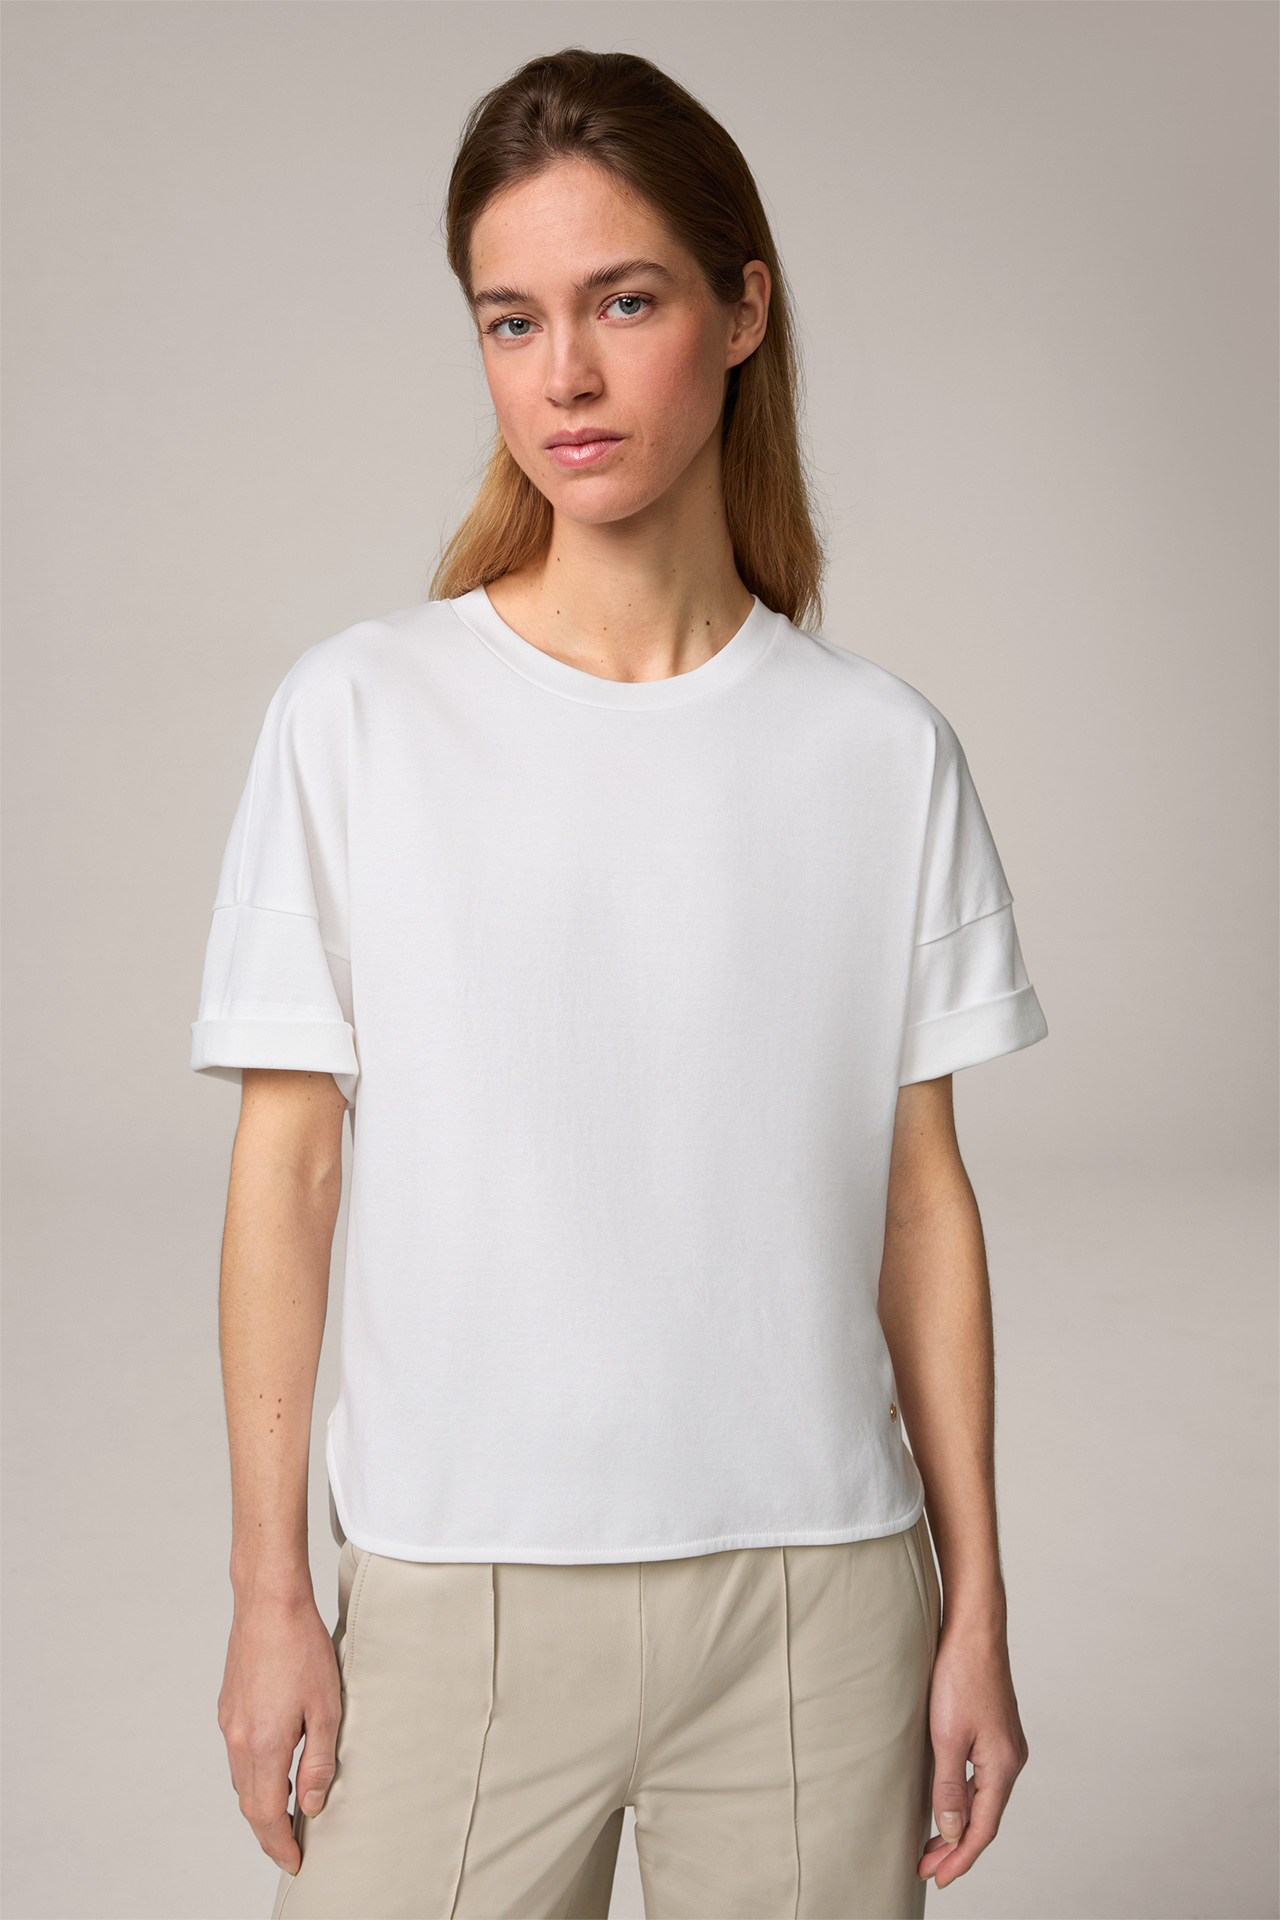  Cotton Interlock Half-Sleeve Shirt in White